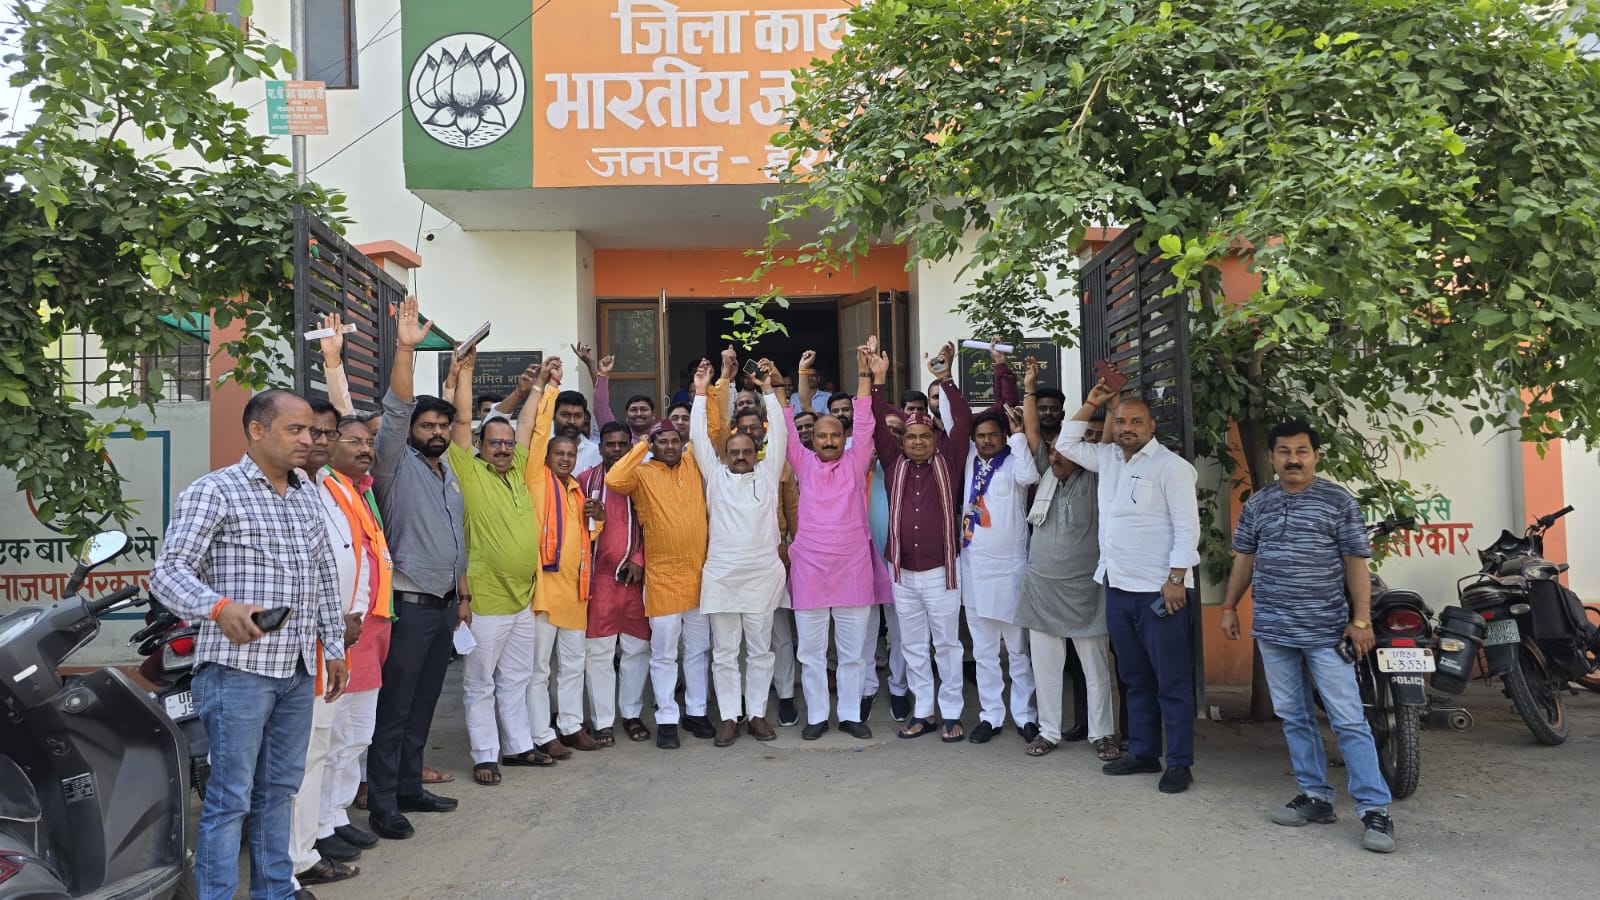 Meeting of Suheldev Bharatiya Samaj Party, Apna Dal, Nishad Party and Rashtriya Lok Dal held in BJP office.